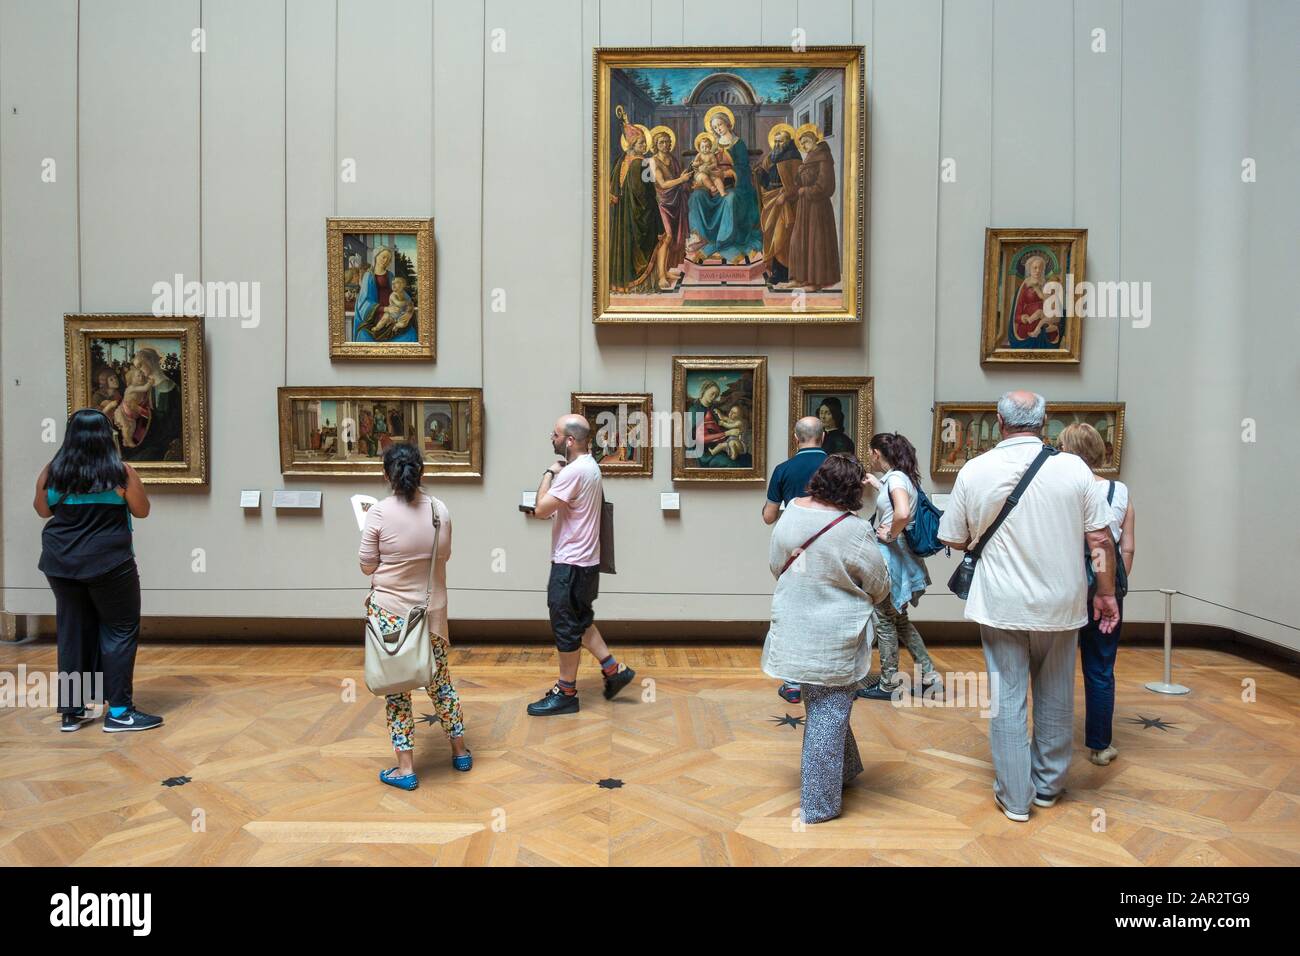 Visitantes que ven pinturas europeas en el ala Denon del Museo del Louvre (Musée du Louvre) en París, Francia Foto de stock